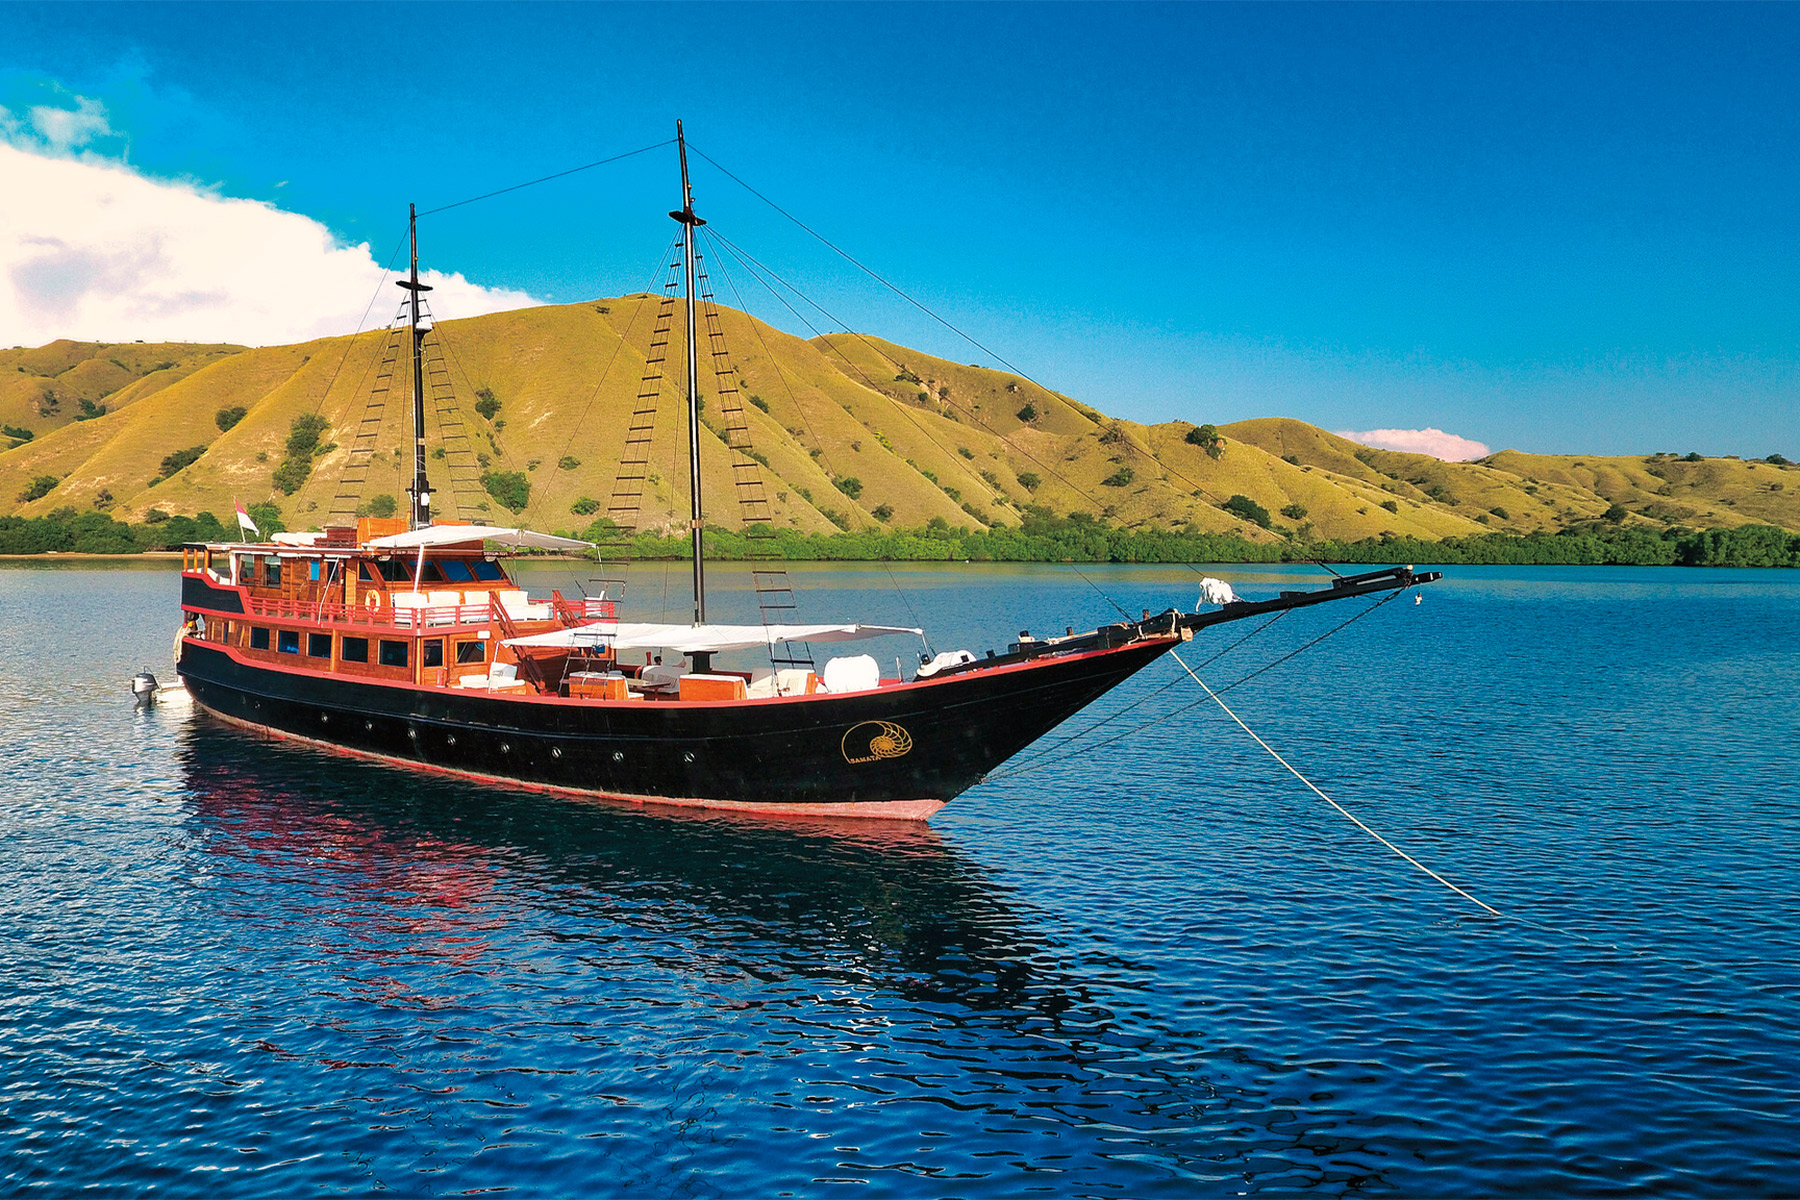 yachting treasure hunt from neiman marcus